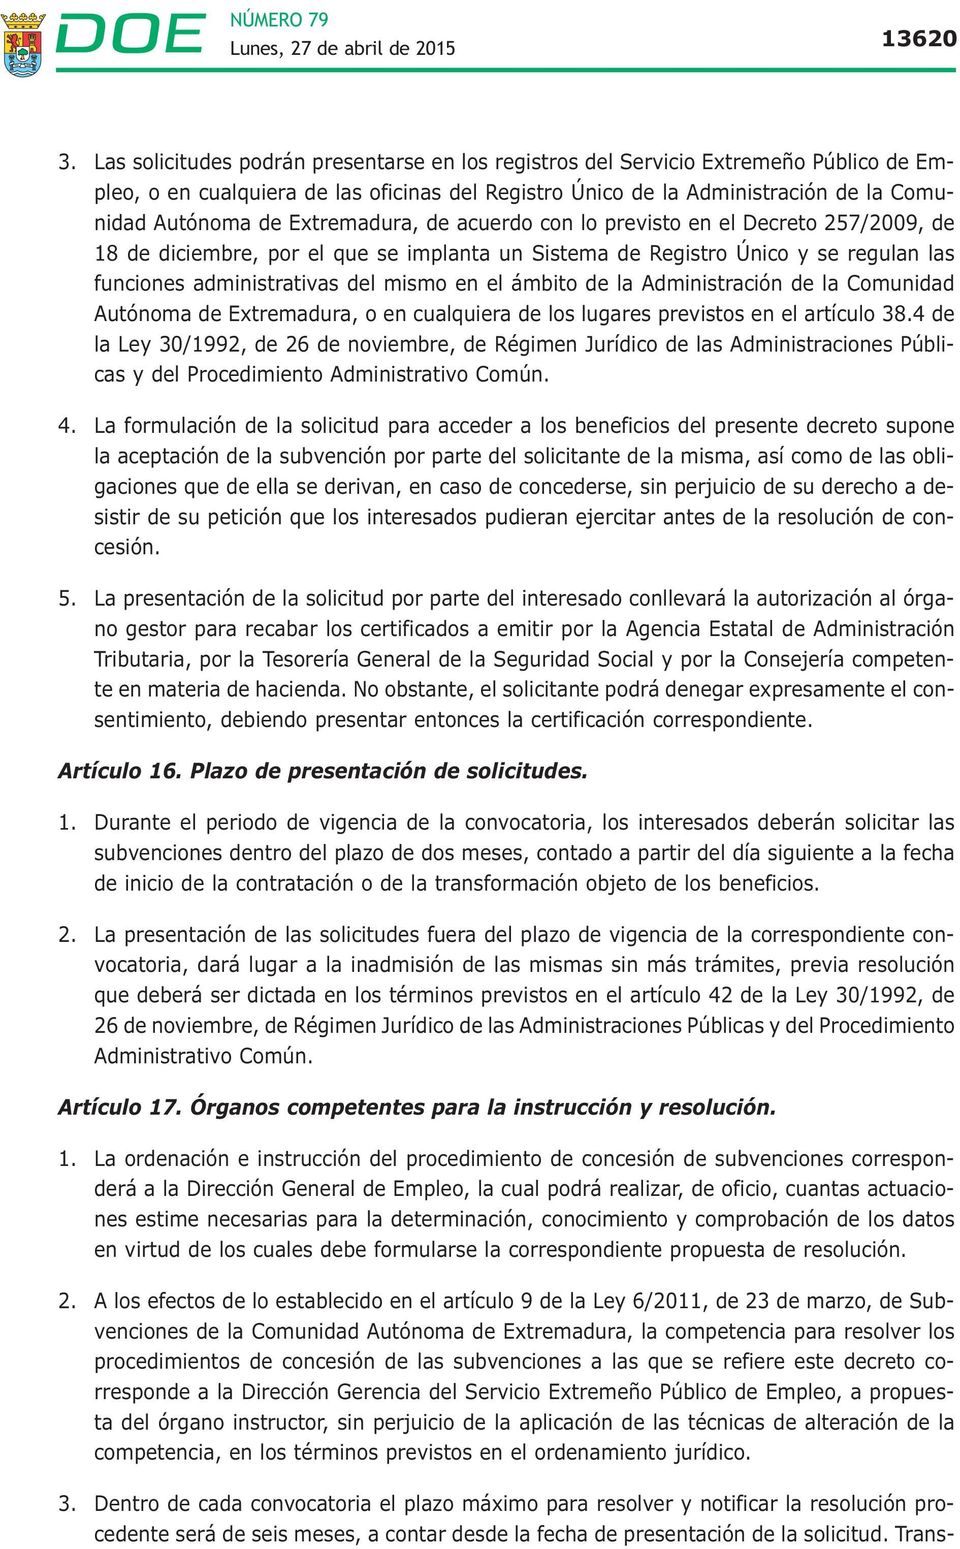 Extremadura, de acuerdo con lo previsto en el Decreto 257/2009, de 18 de diciembre, por el que se implanta un Sistema de Registro Único y se regulan las funciones administrativas del mismo en el